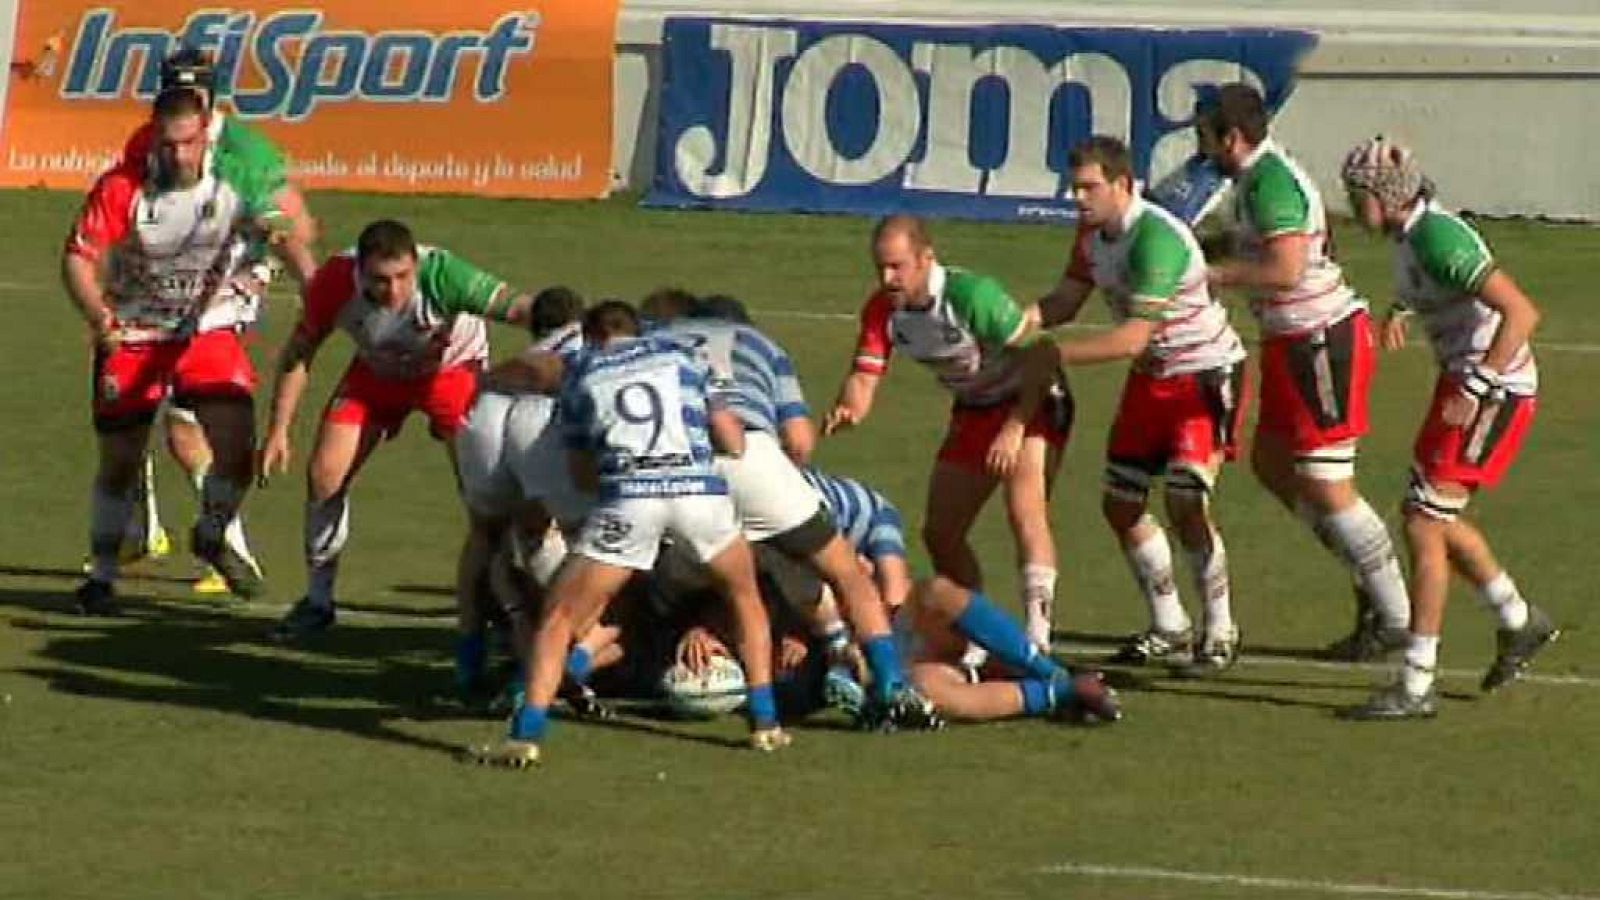 Rugby - Liga División de Honor 12ª jornada: CR Cisneros - CE Hernani